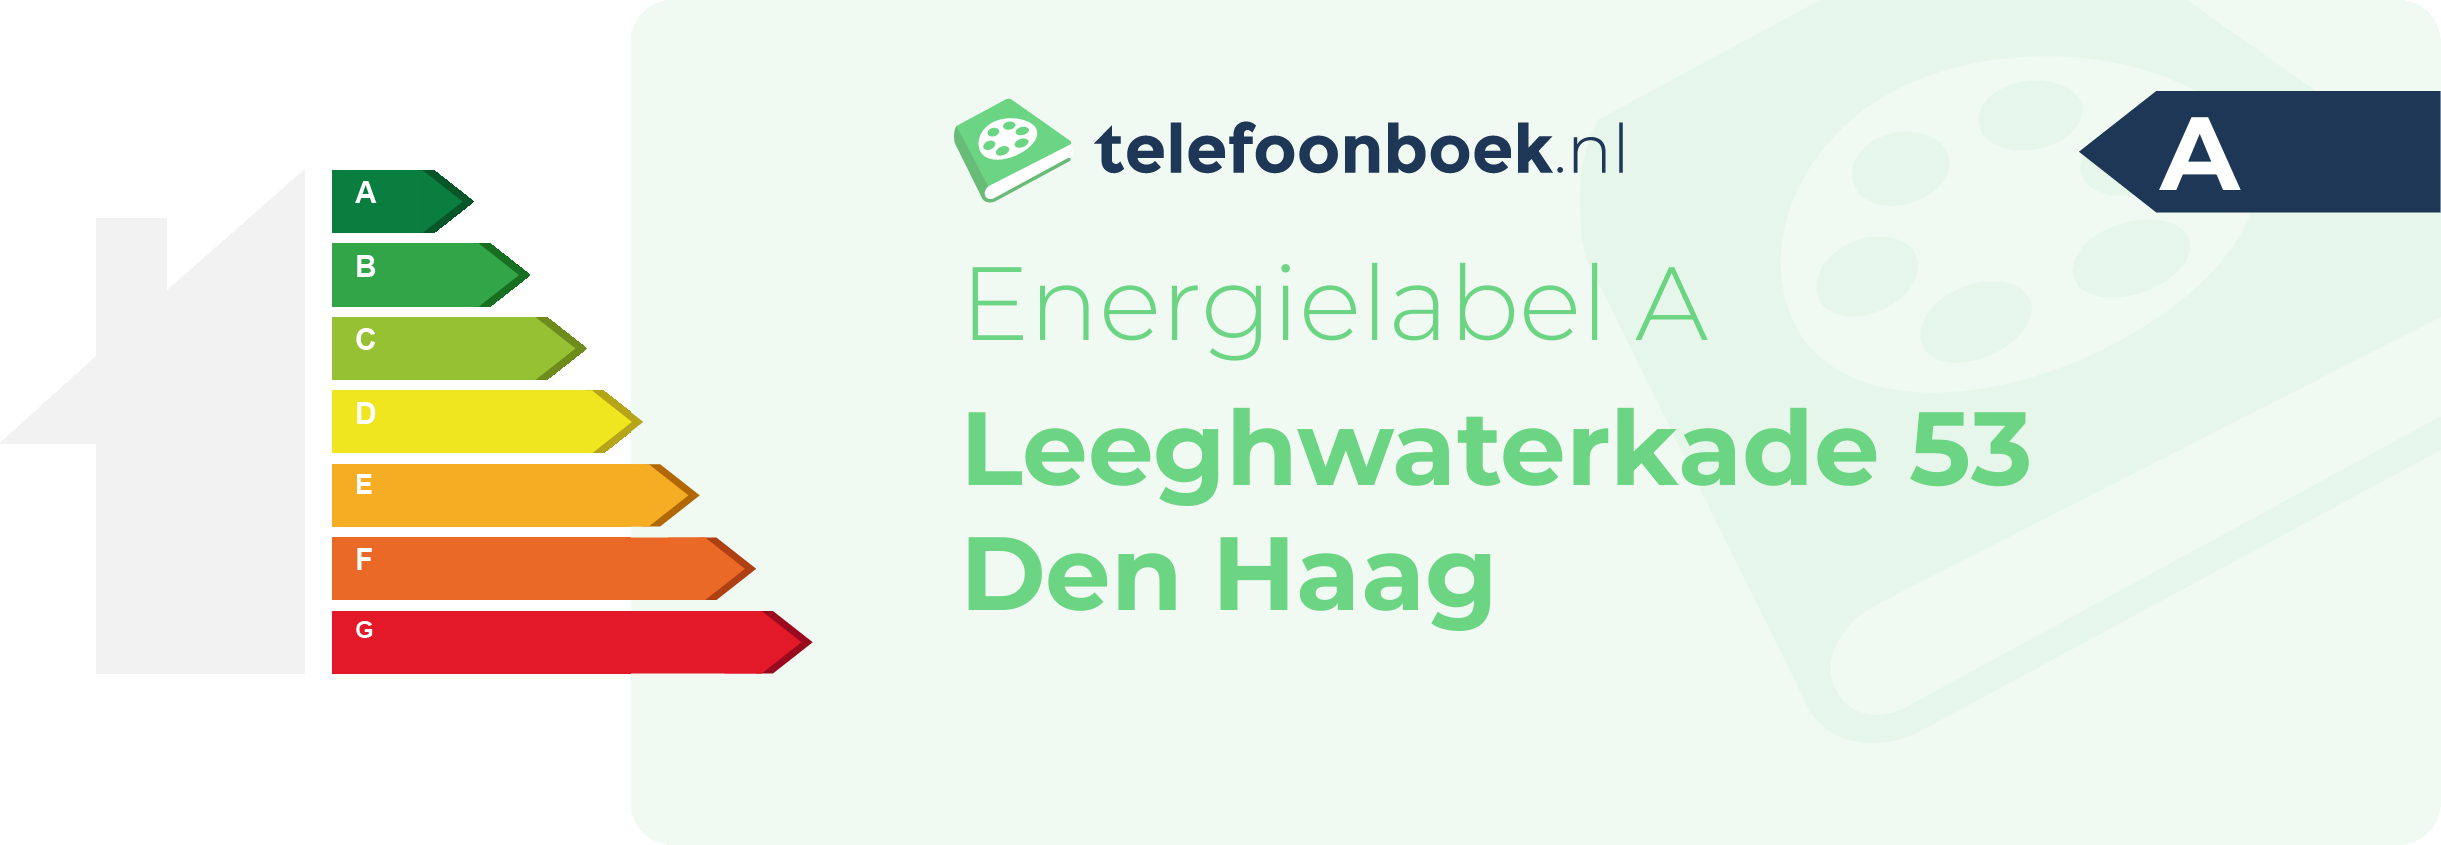 Energielabel Leeghwaterkade 53 Den Haag